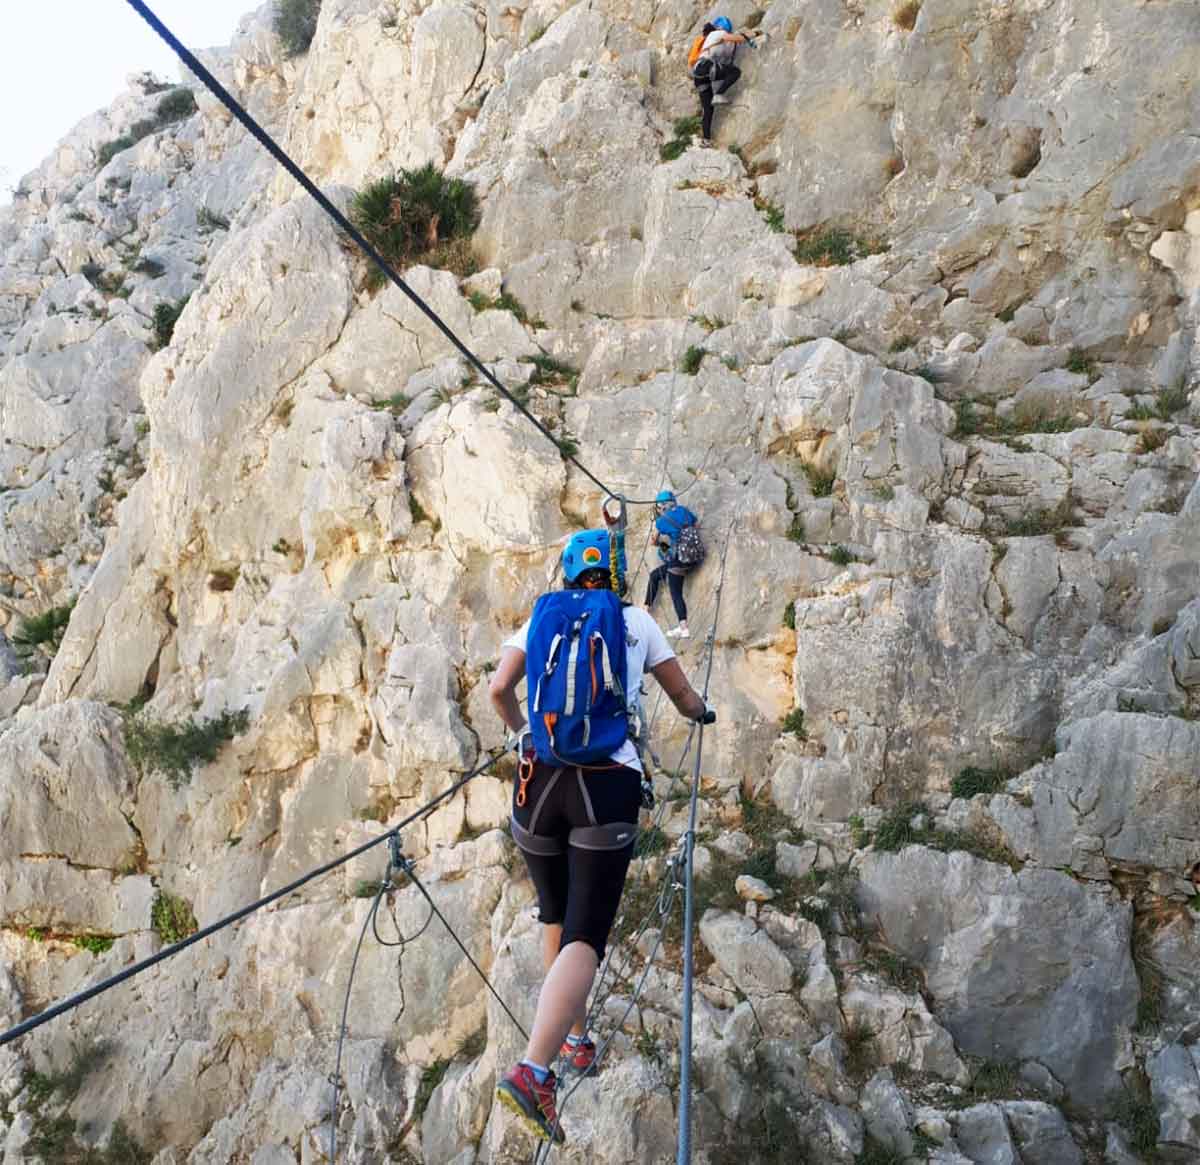 Sonntag Aktivitäten Tipp: Klettersteig klettern.